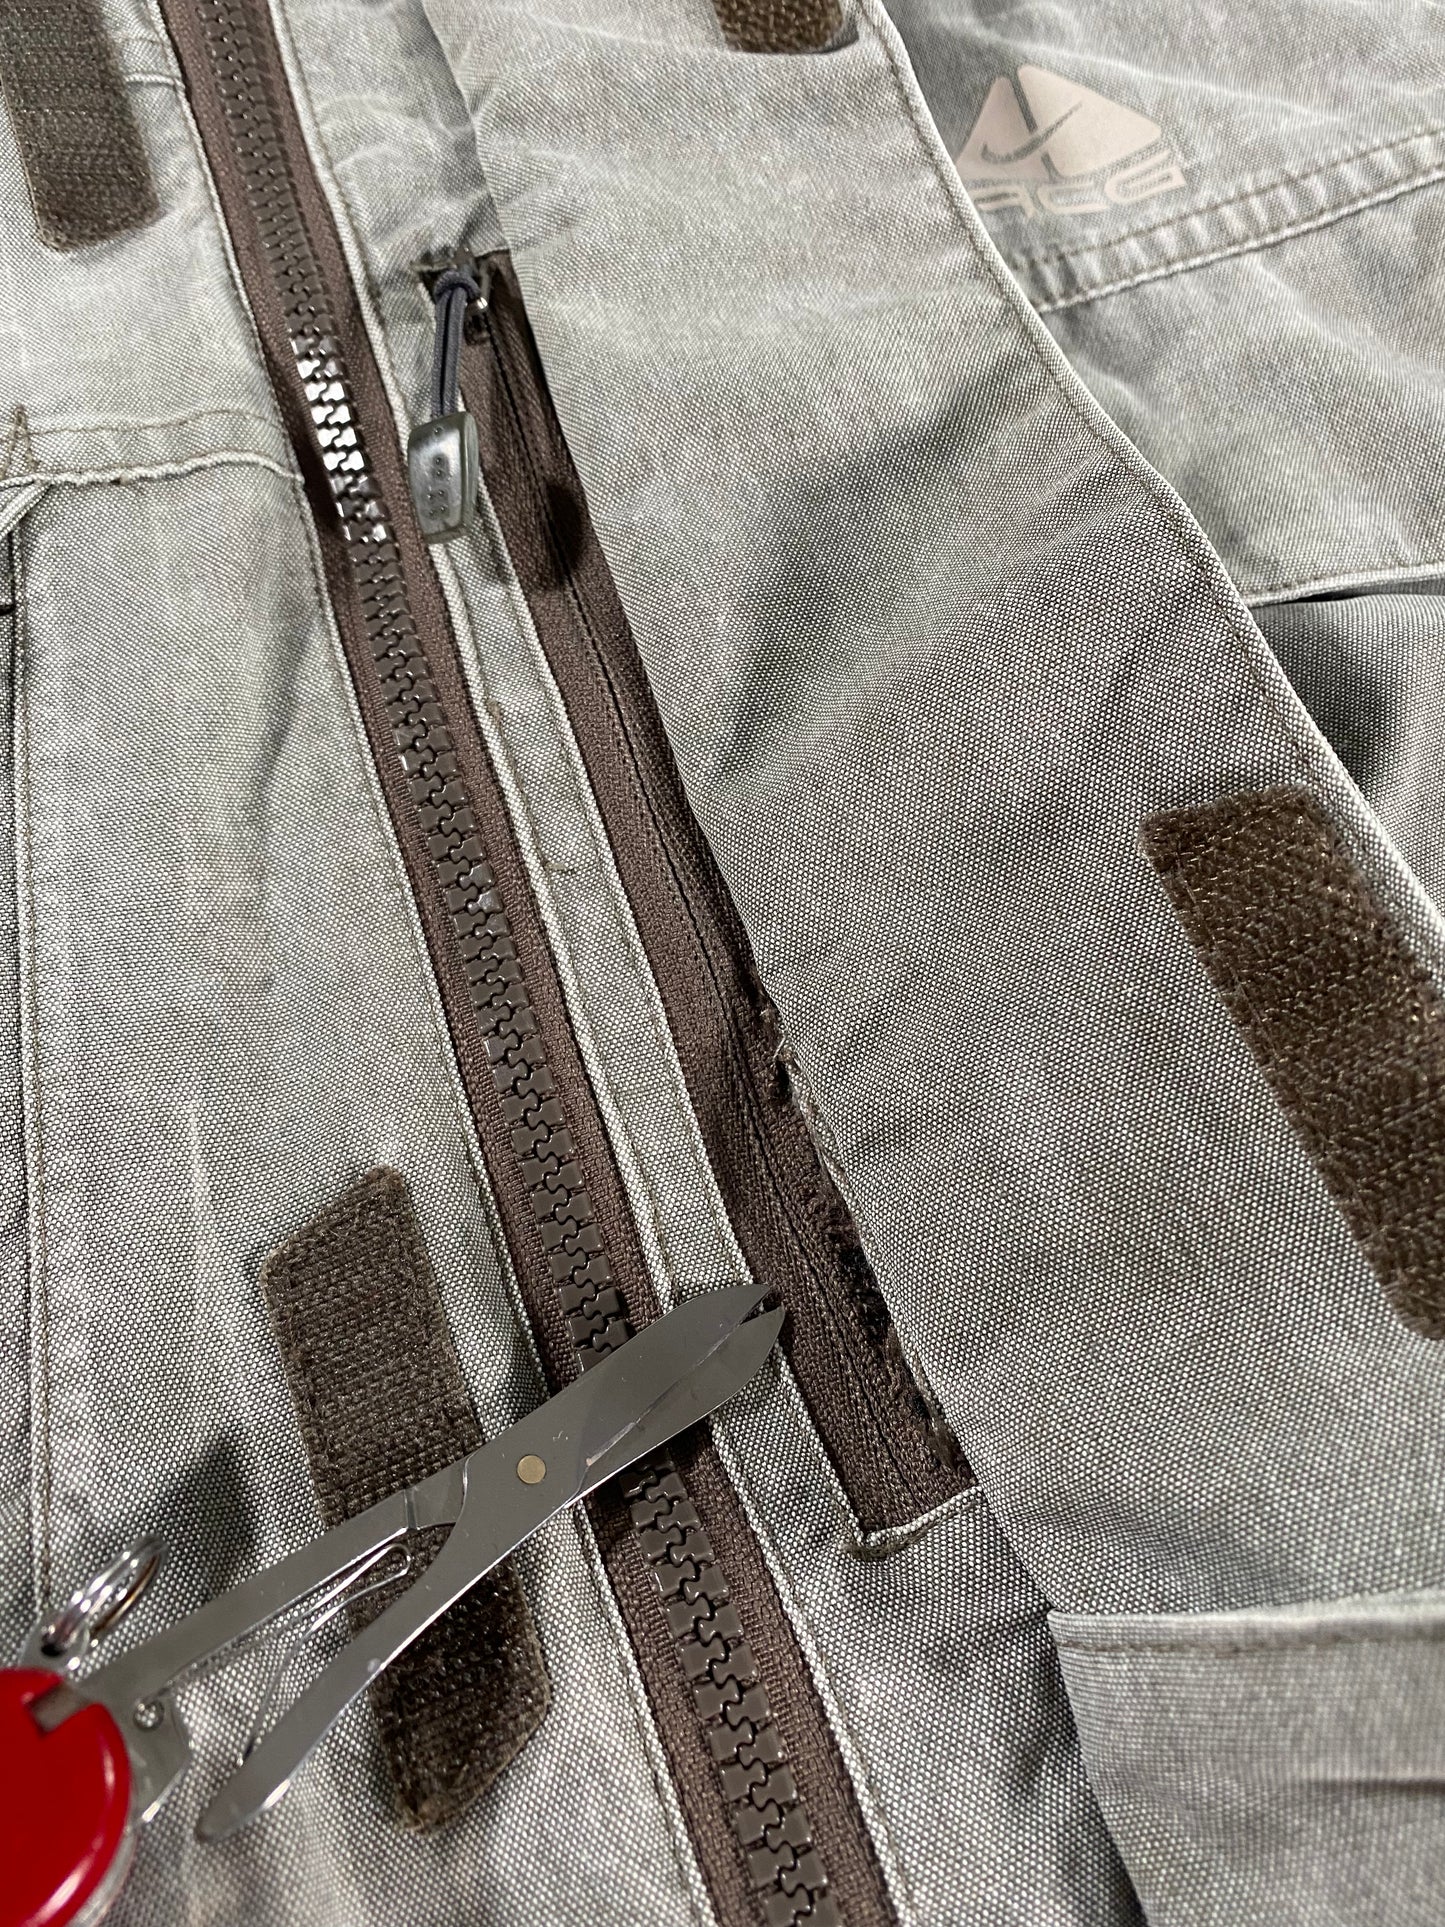 Vintage Nike ACG Stone Grey Multi Pocket Padded Jacket L